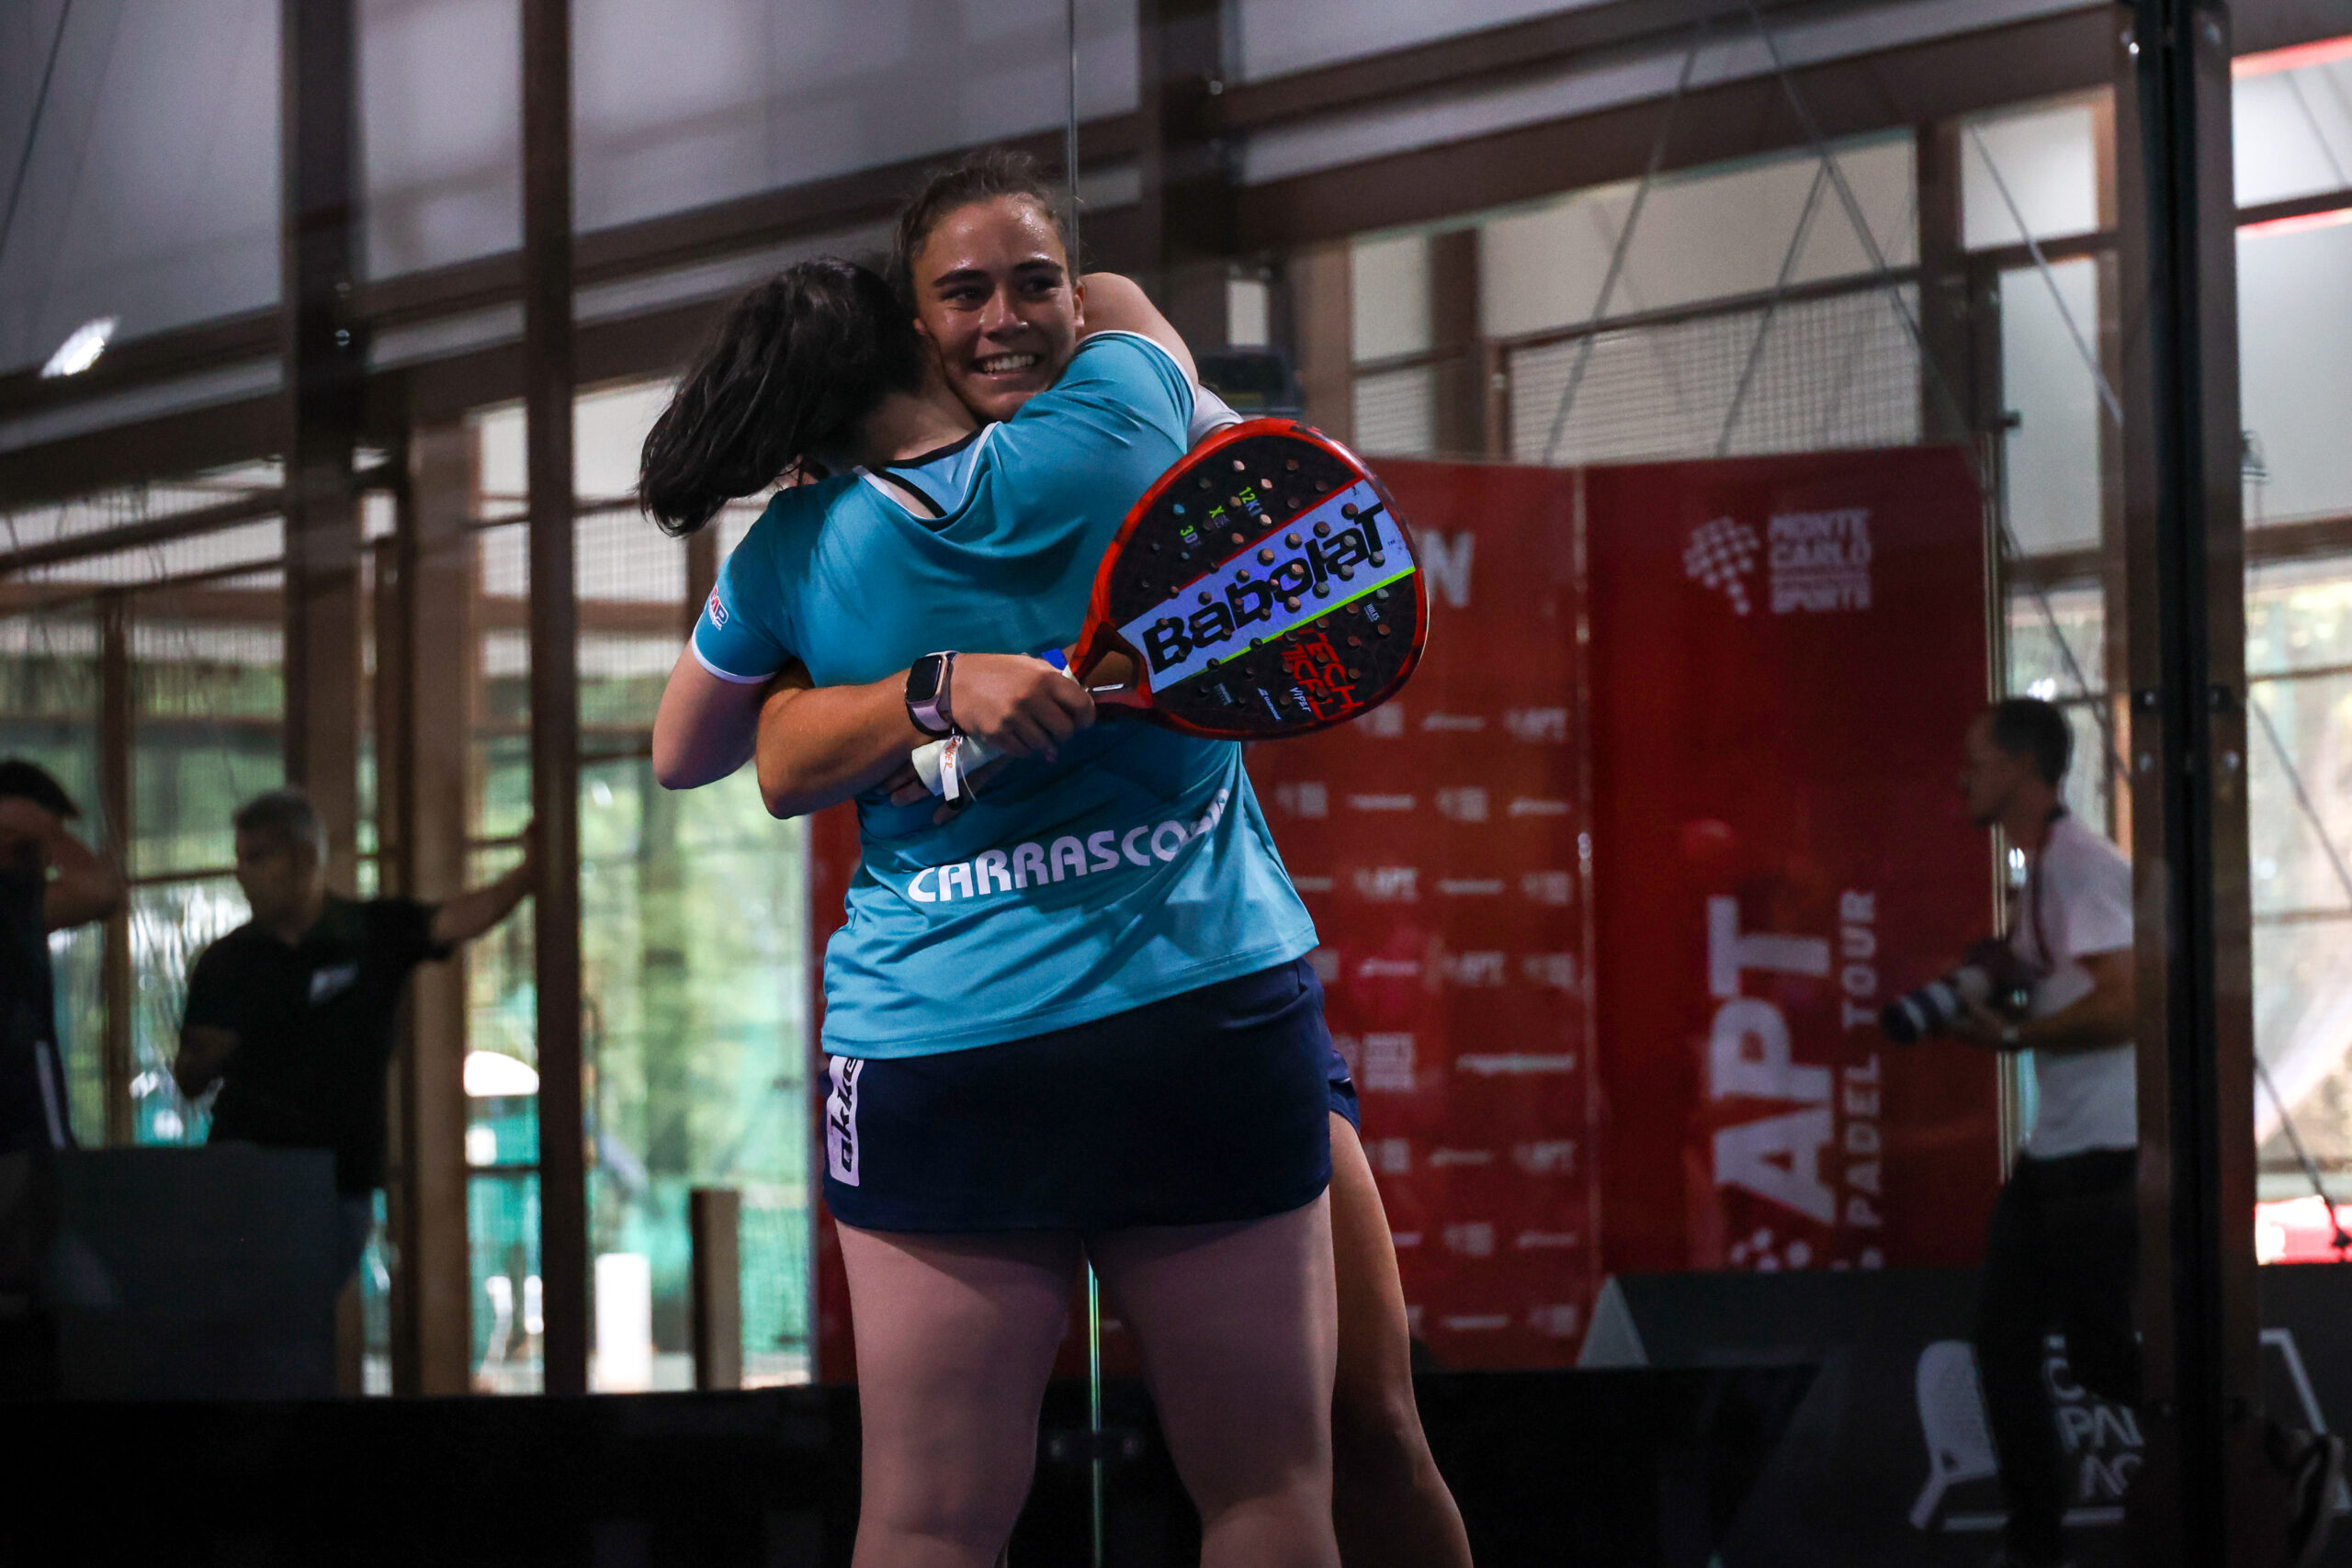 APT Oeiras Open – Carrascosa and Martinez champions